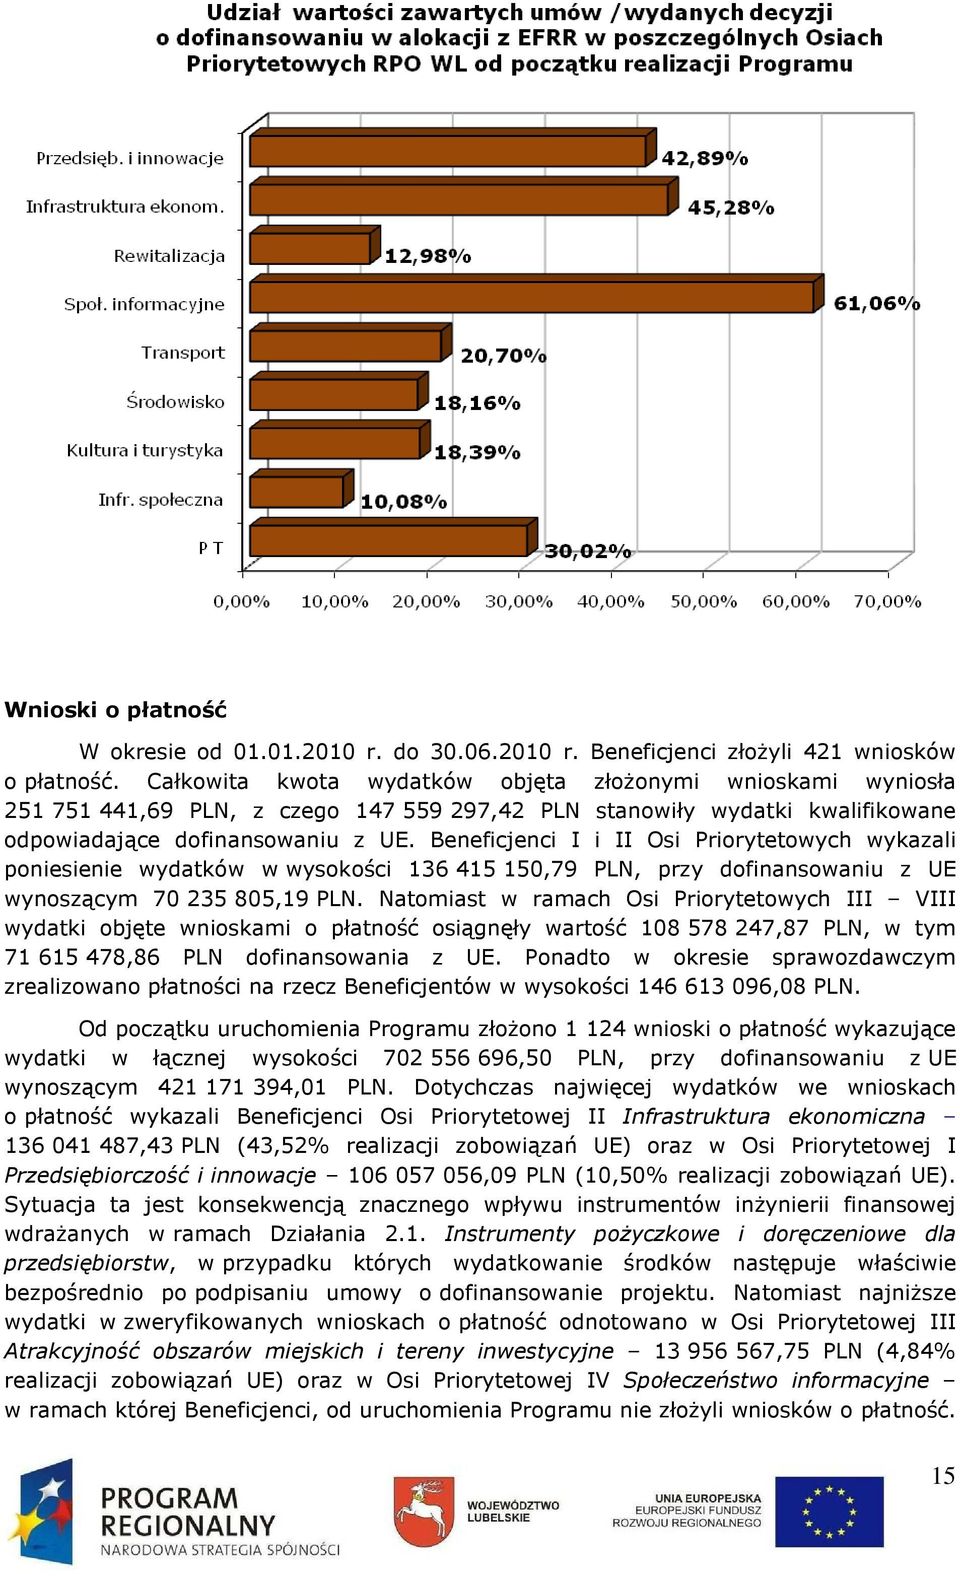 Beneficjenci I i II Osi Priorytetowych wykazali poniesienie wydatków w wysokości 136 415 150,79 PLN, przy dofinansowaniu z UE wynoszącym 70 235 805,19 PLN.